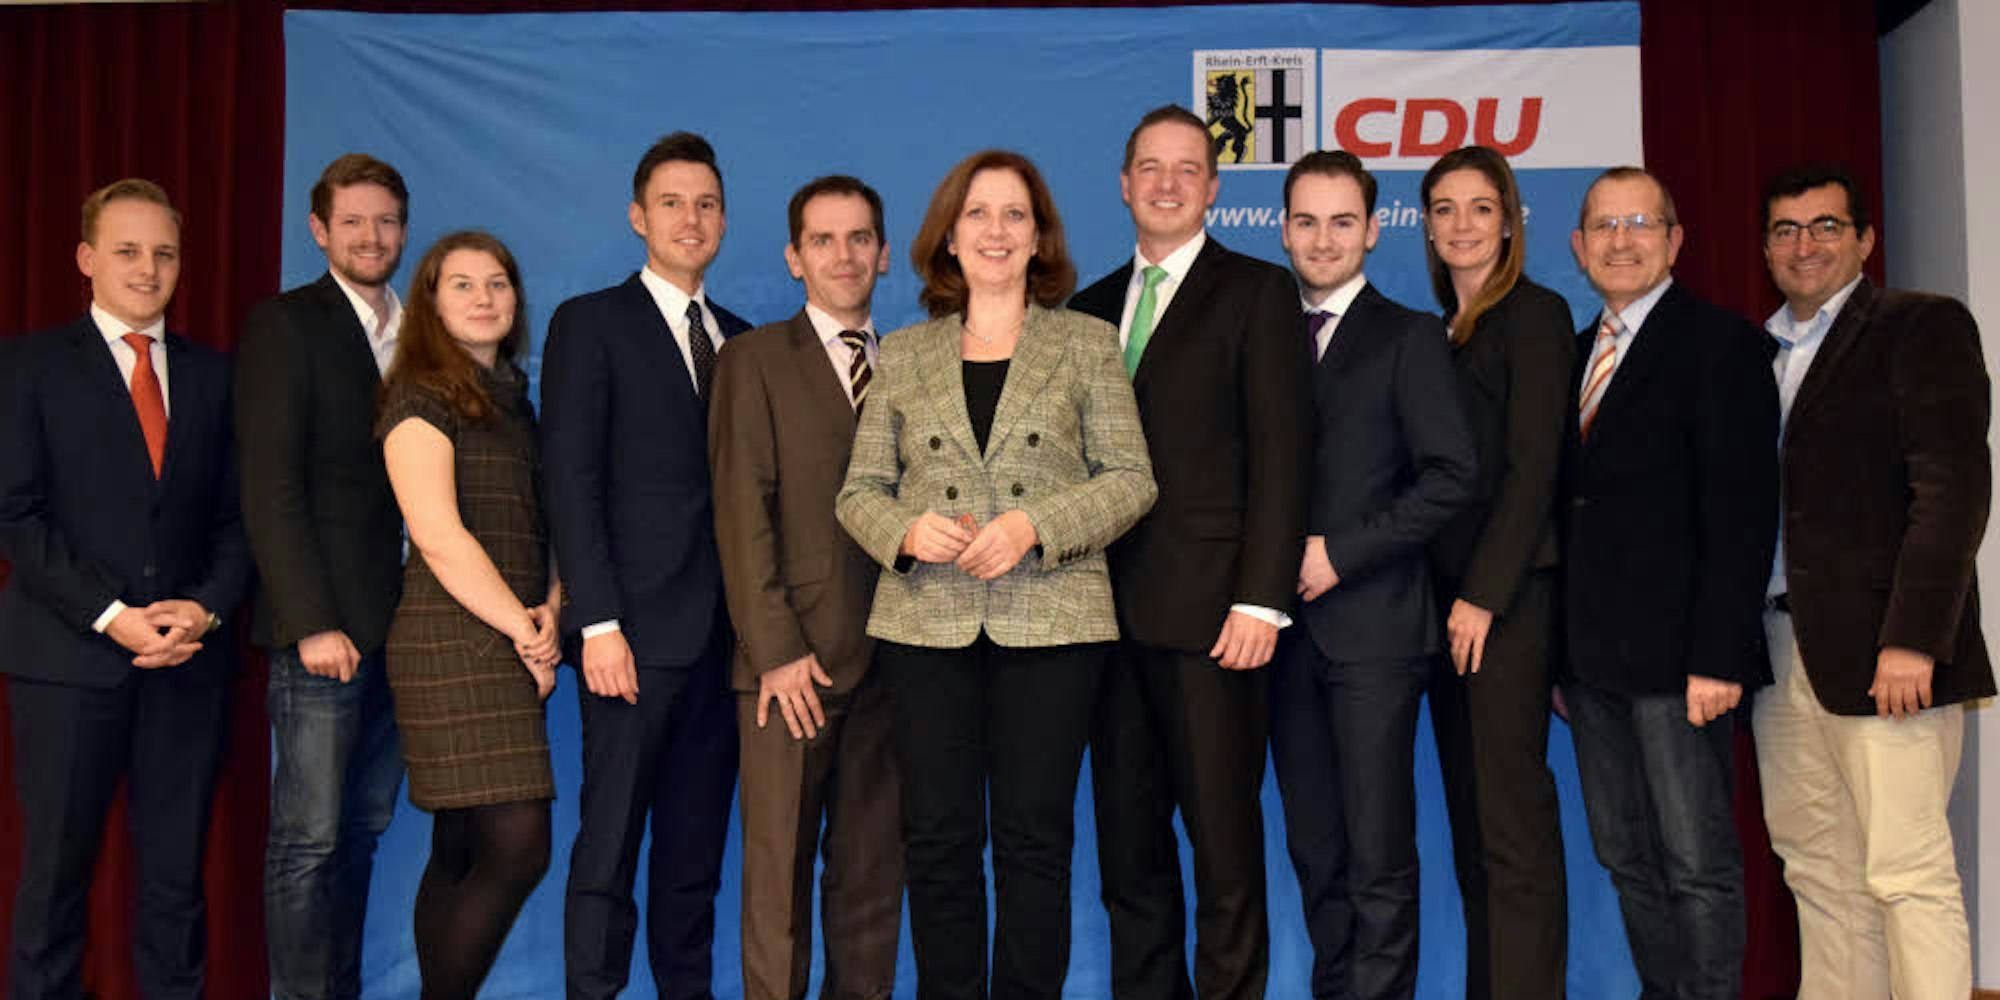 Zum neuen Vorstand des CDU-Stadtverbandes gehören bekannte und neue Gesichter.